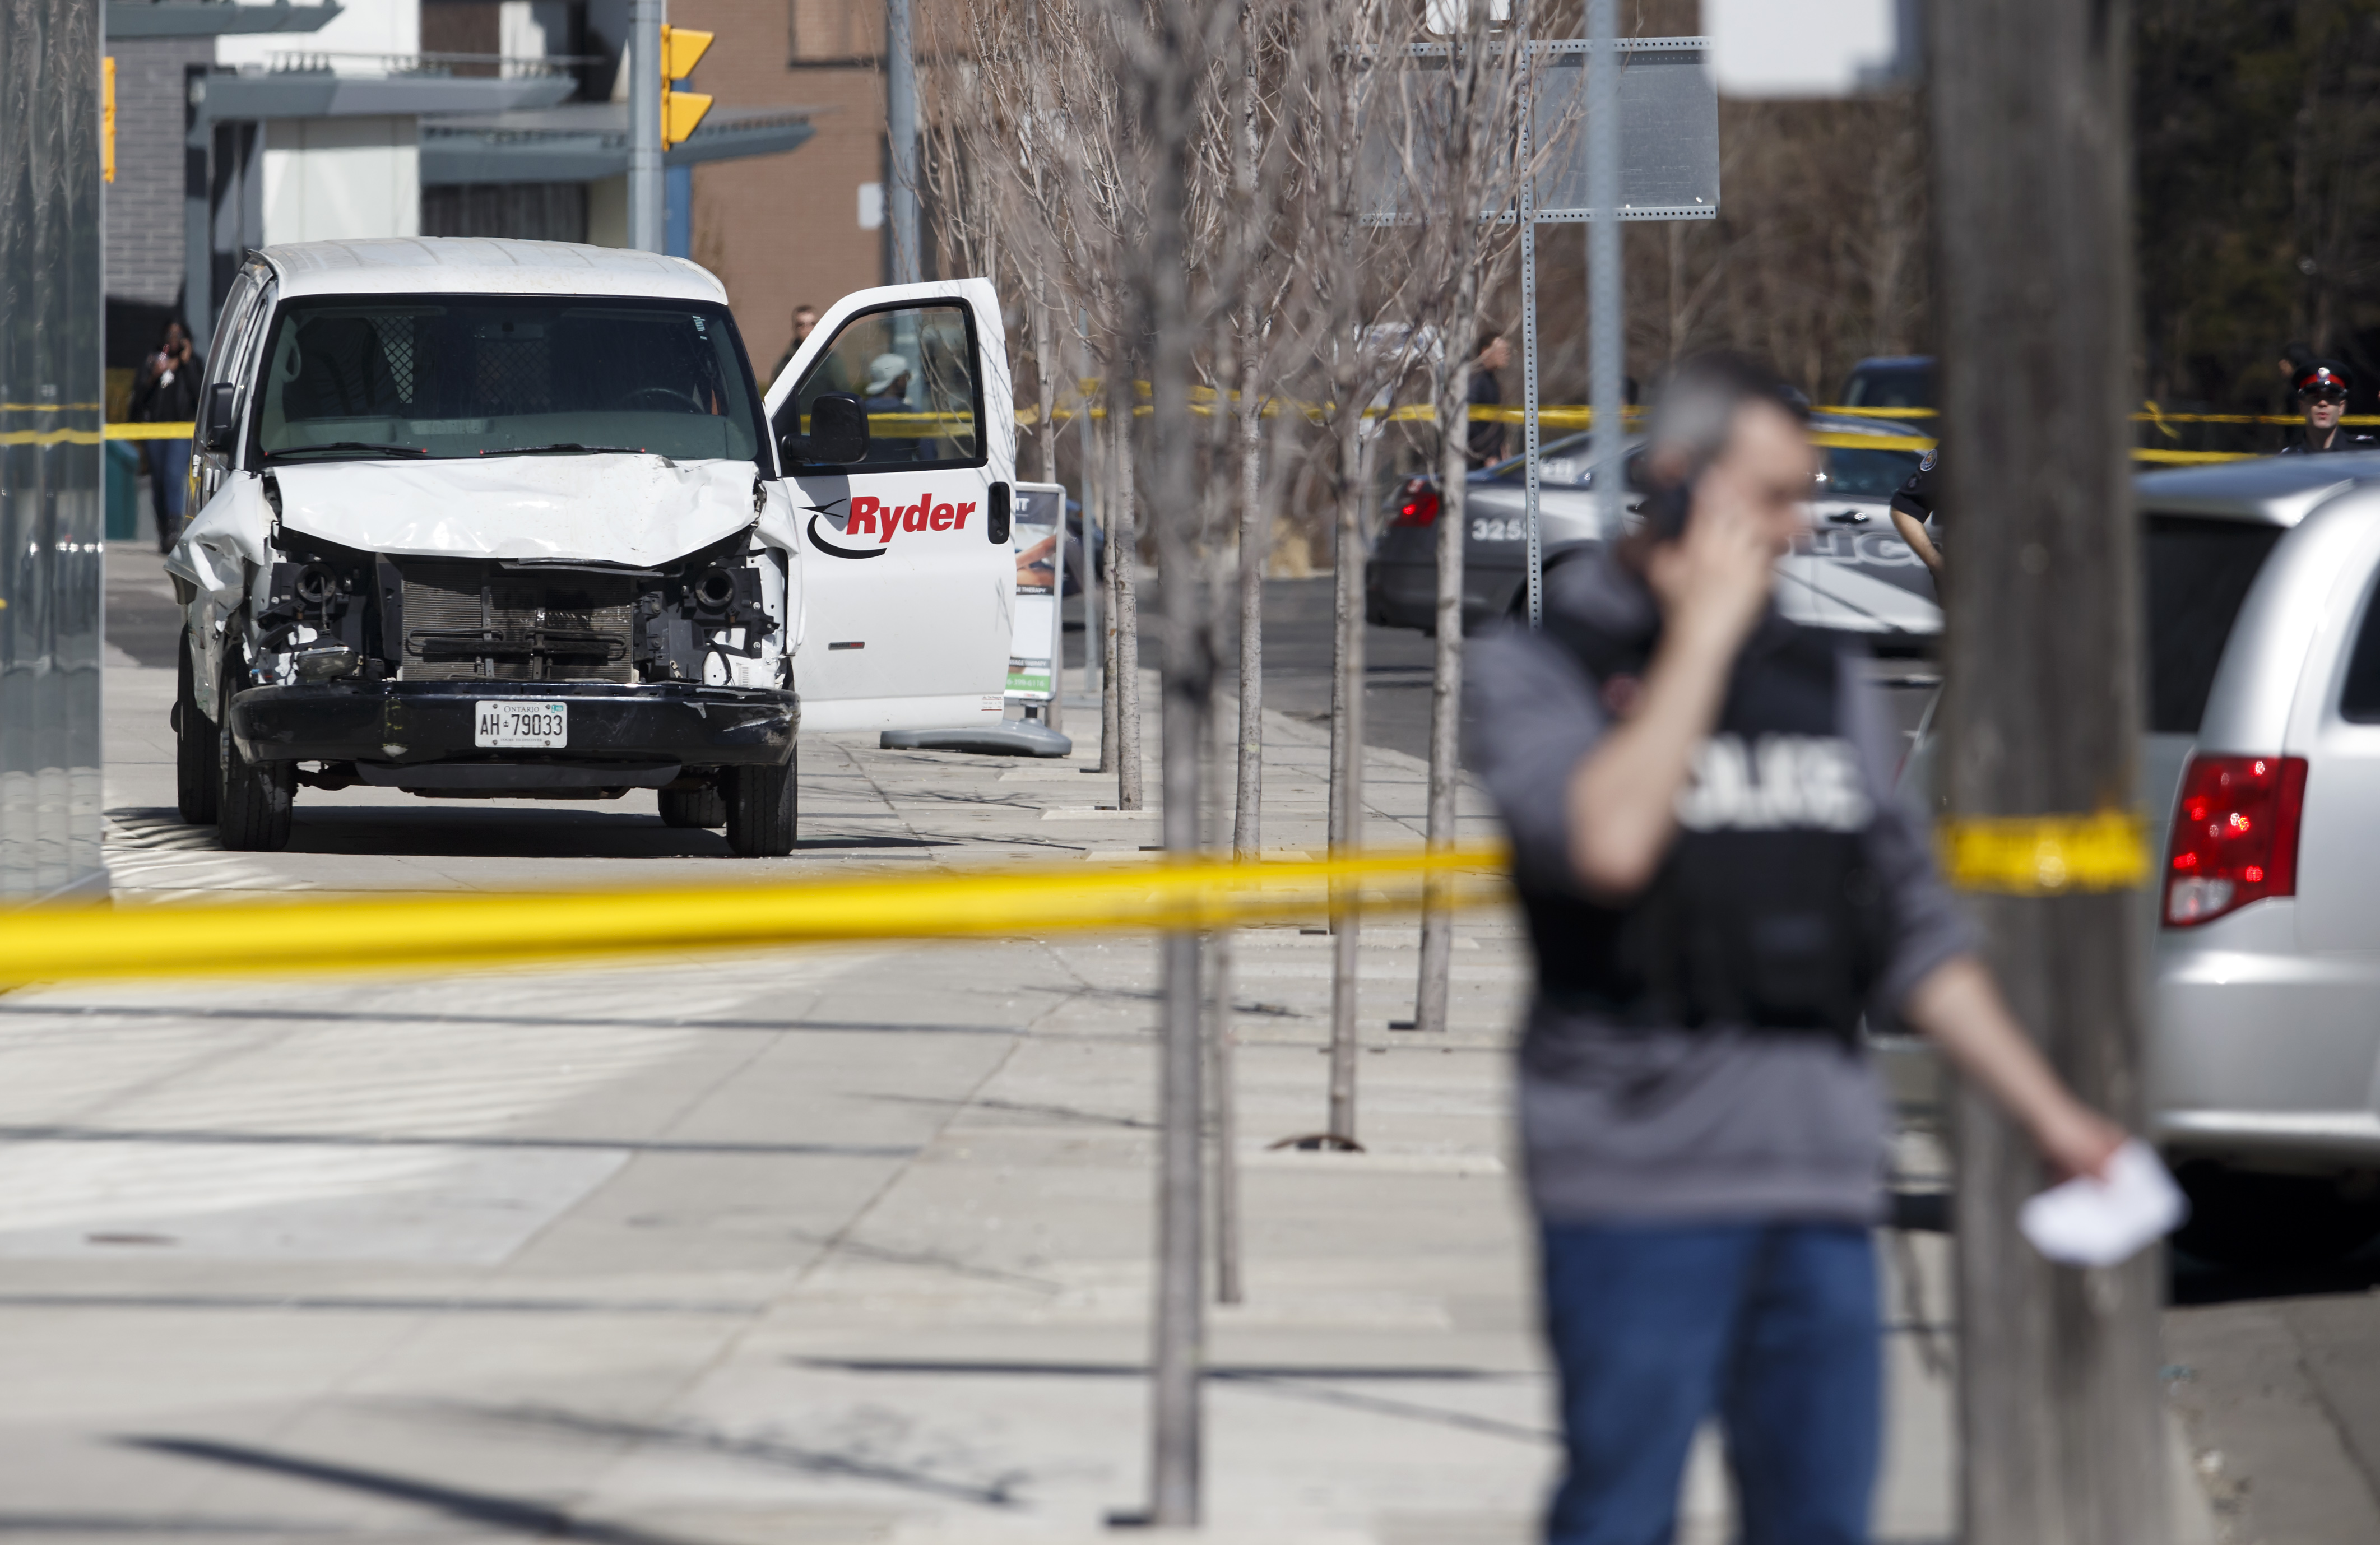 Kisteherautó hajtott emberek közé Torontóban, legalább kilencen meghaltak, sok sérült is van